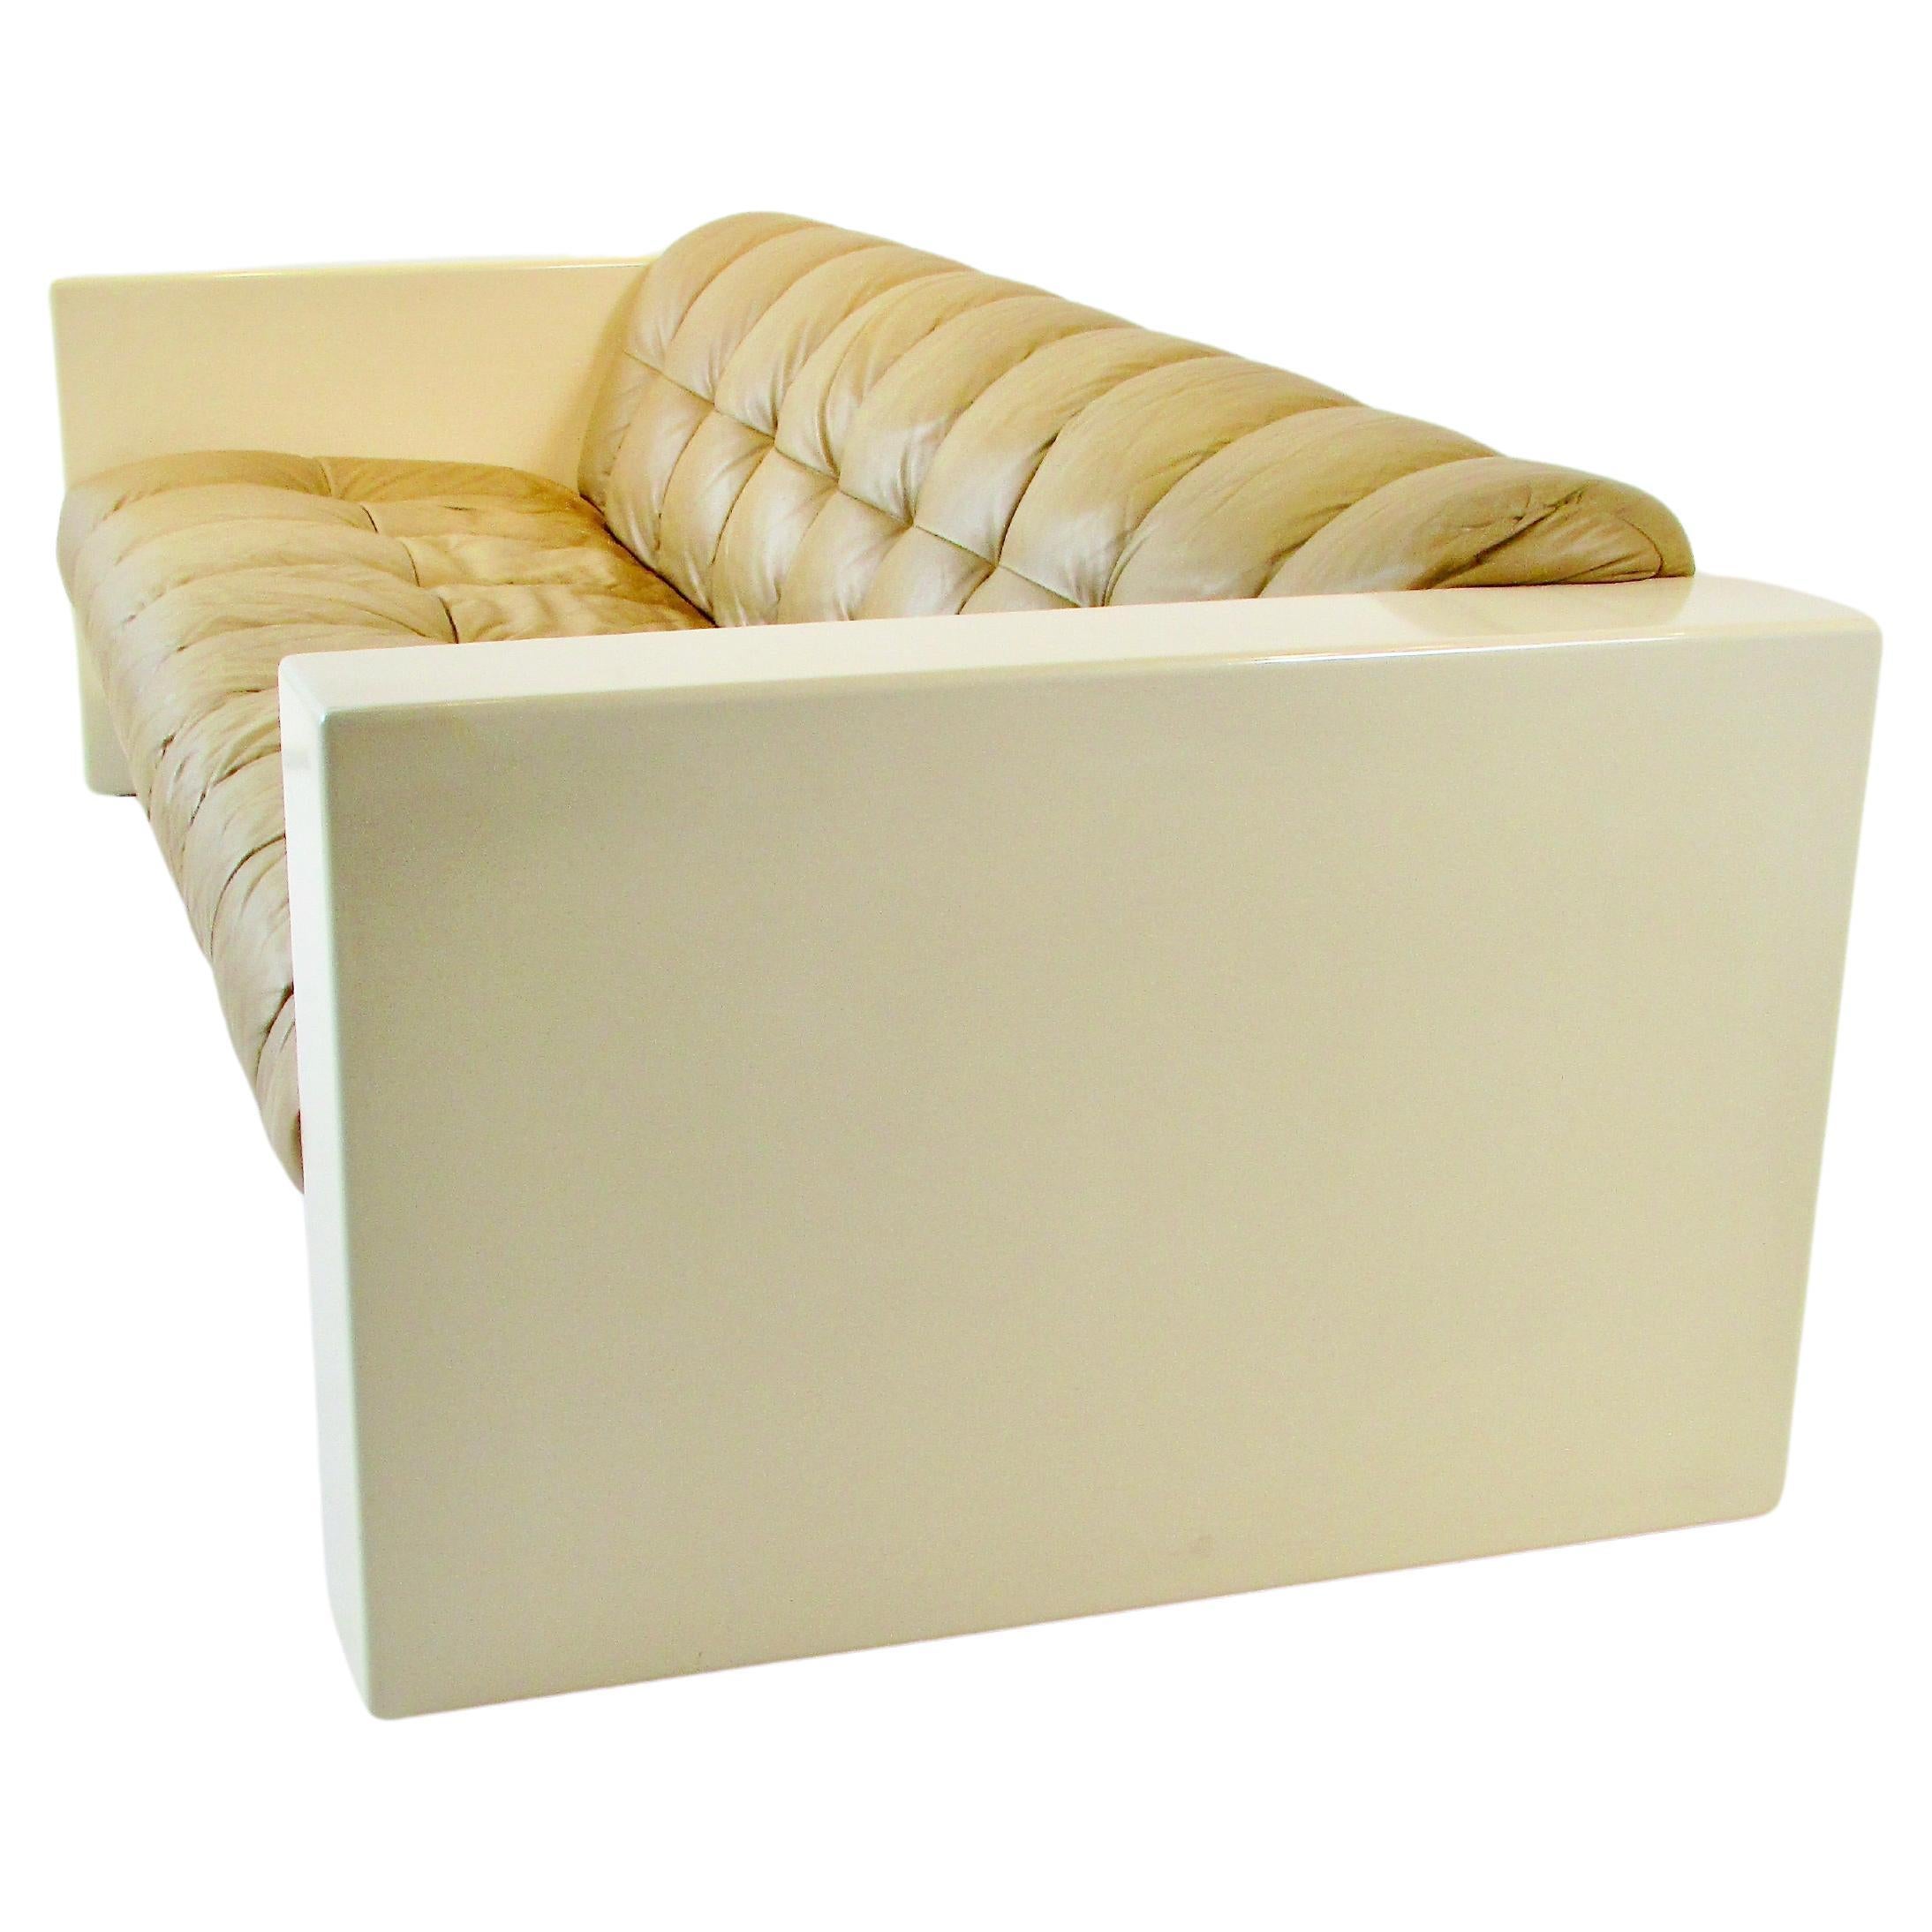 Canapé conçu par Jules Heumann pour sa société Metropolitan furniture basée en Californie. Le Label indique 